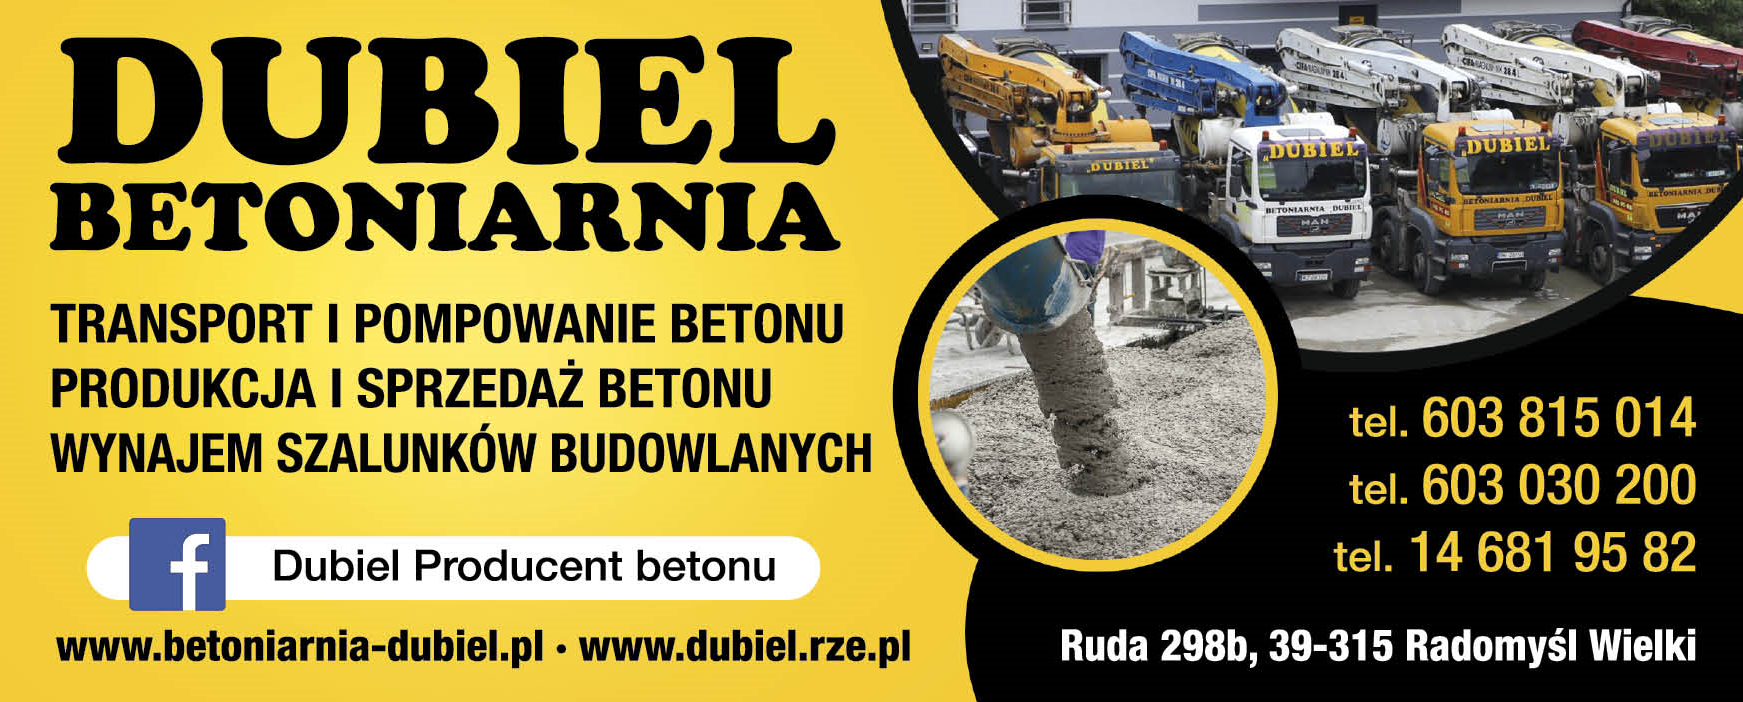 Firma "DUBIEL" Sp. z o.o. Ruda Transport i Pompowanie Betonu / Produkcja i Sprzedaż Betonu